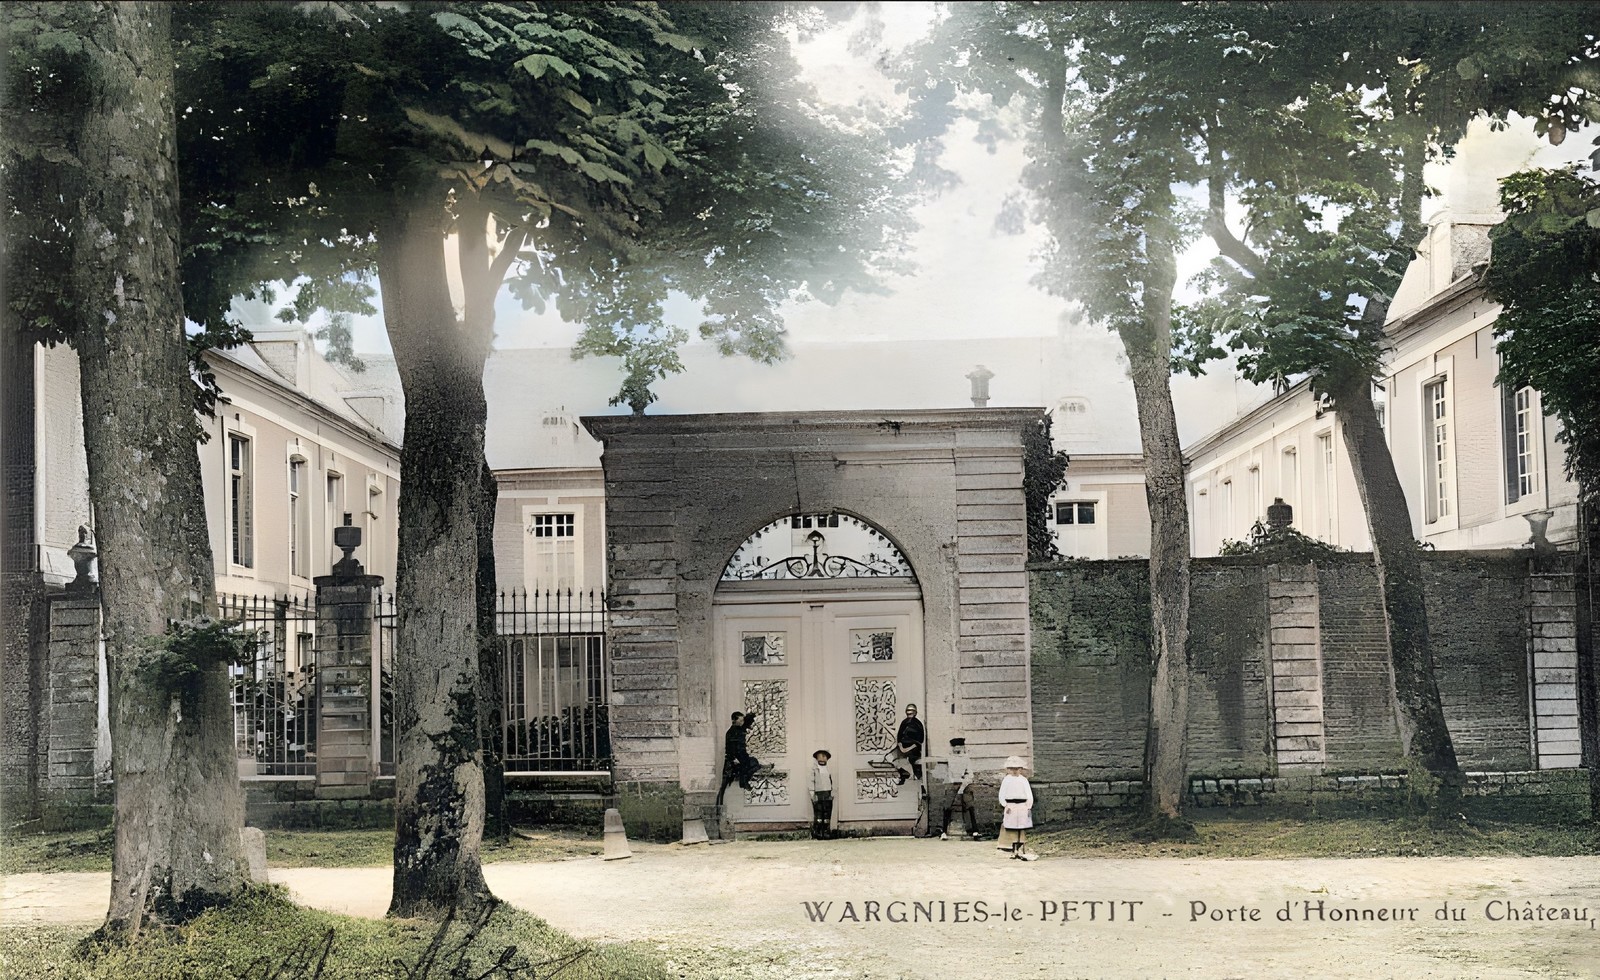 L'ancienne entrée du château de l'Epine à Wargnies le Petit.